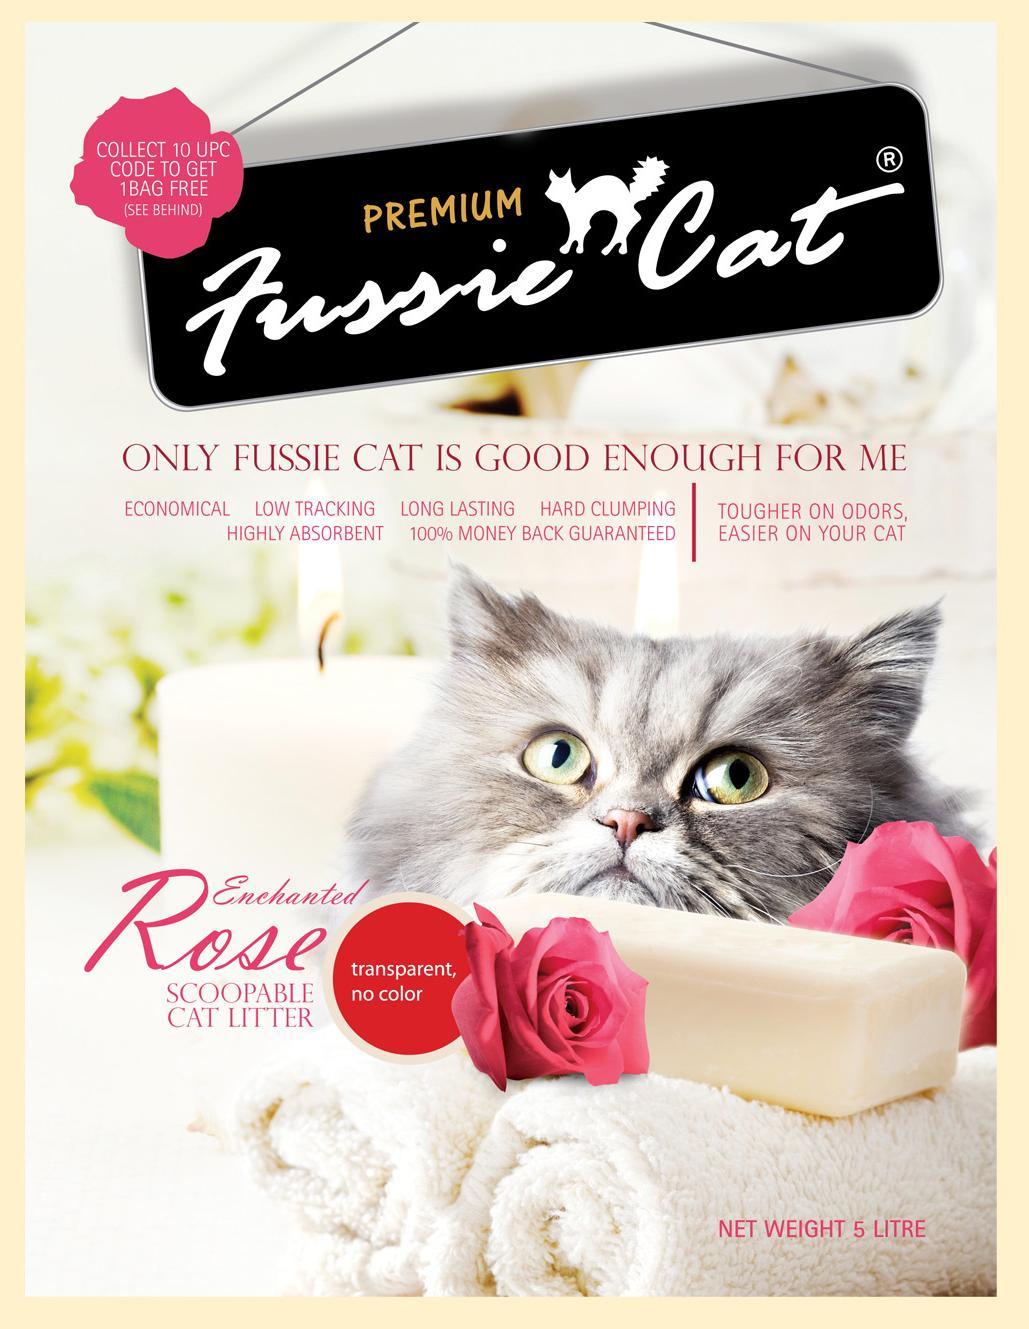 Fussie Cat 高竇貓礦物貓砂 (10 種味道) - Pet Pet Plaza